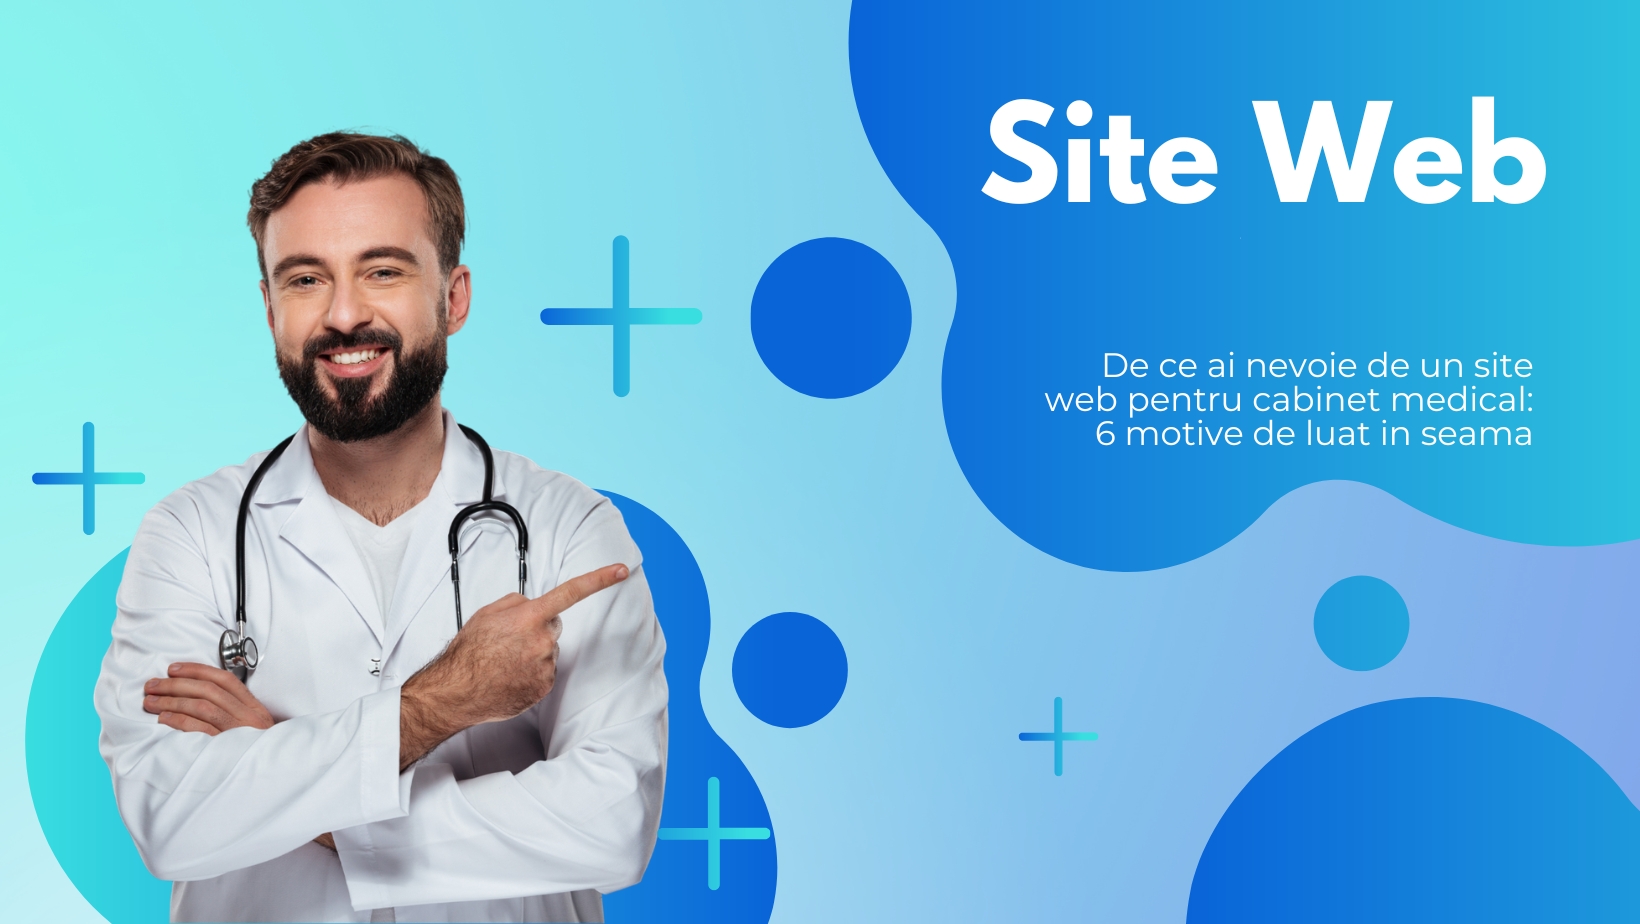 De ce ai nevoie de un site web pentru cabinet medical